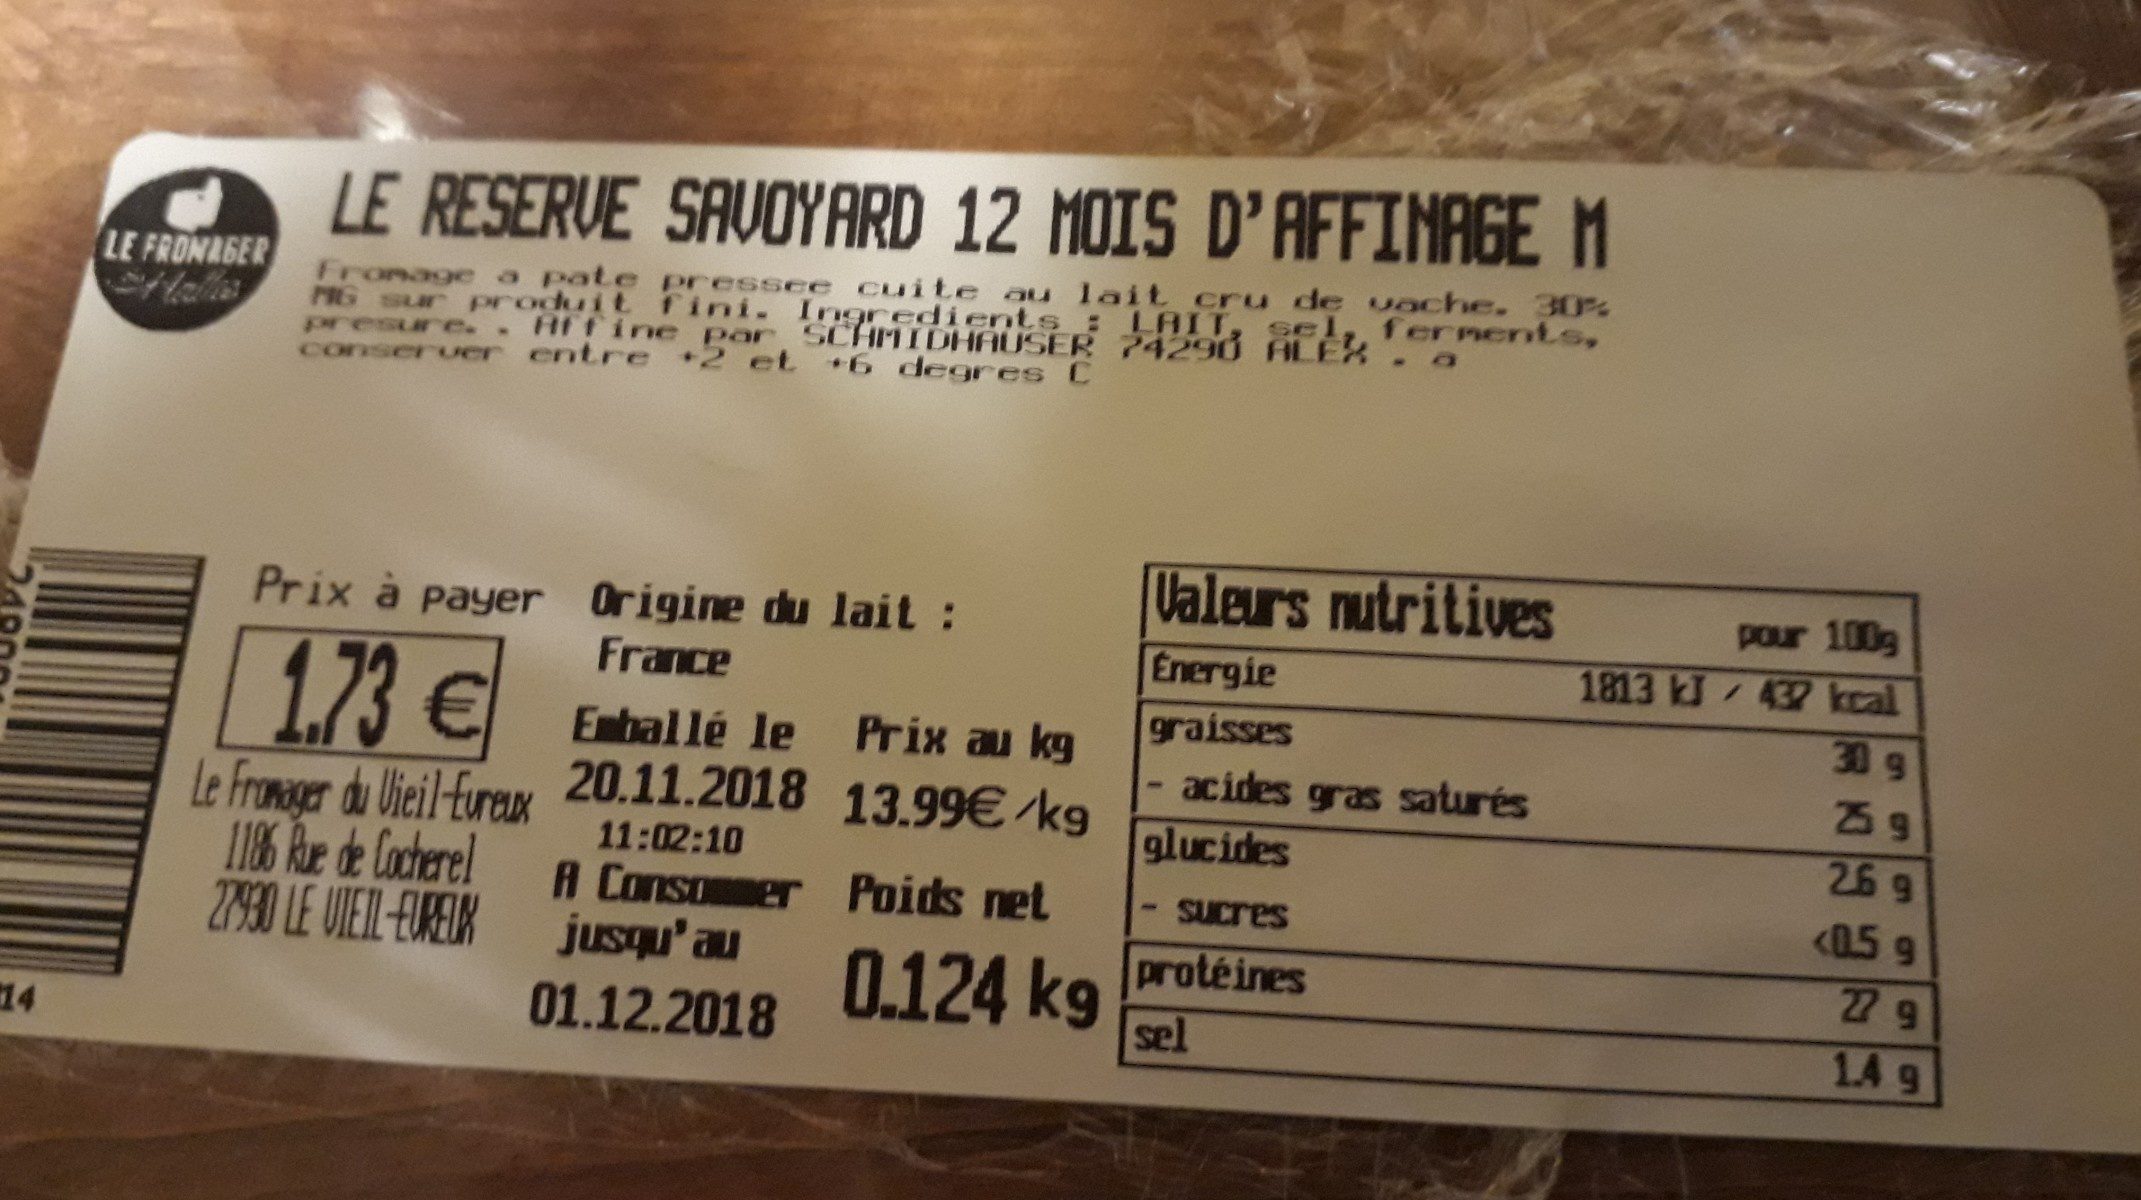 Le réserve savoyard 12mois d'affinage - Ingredients - fr